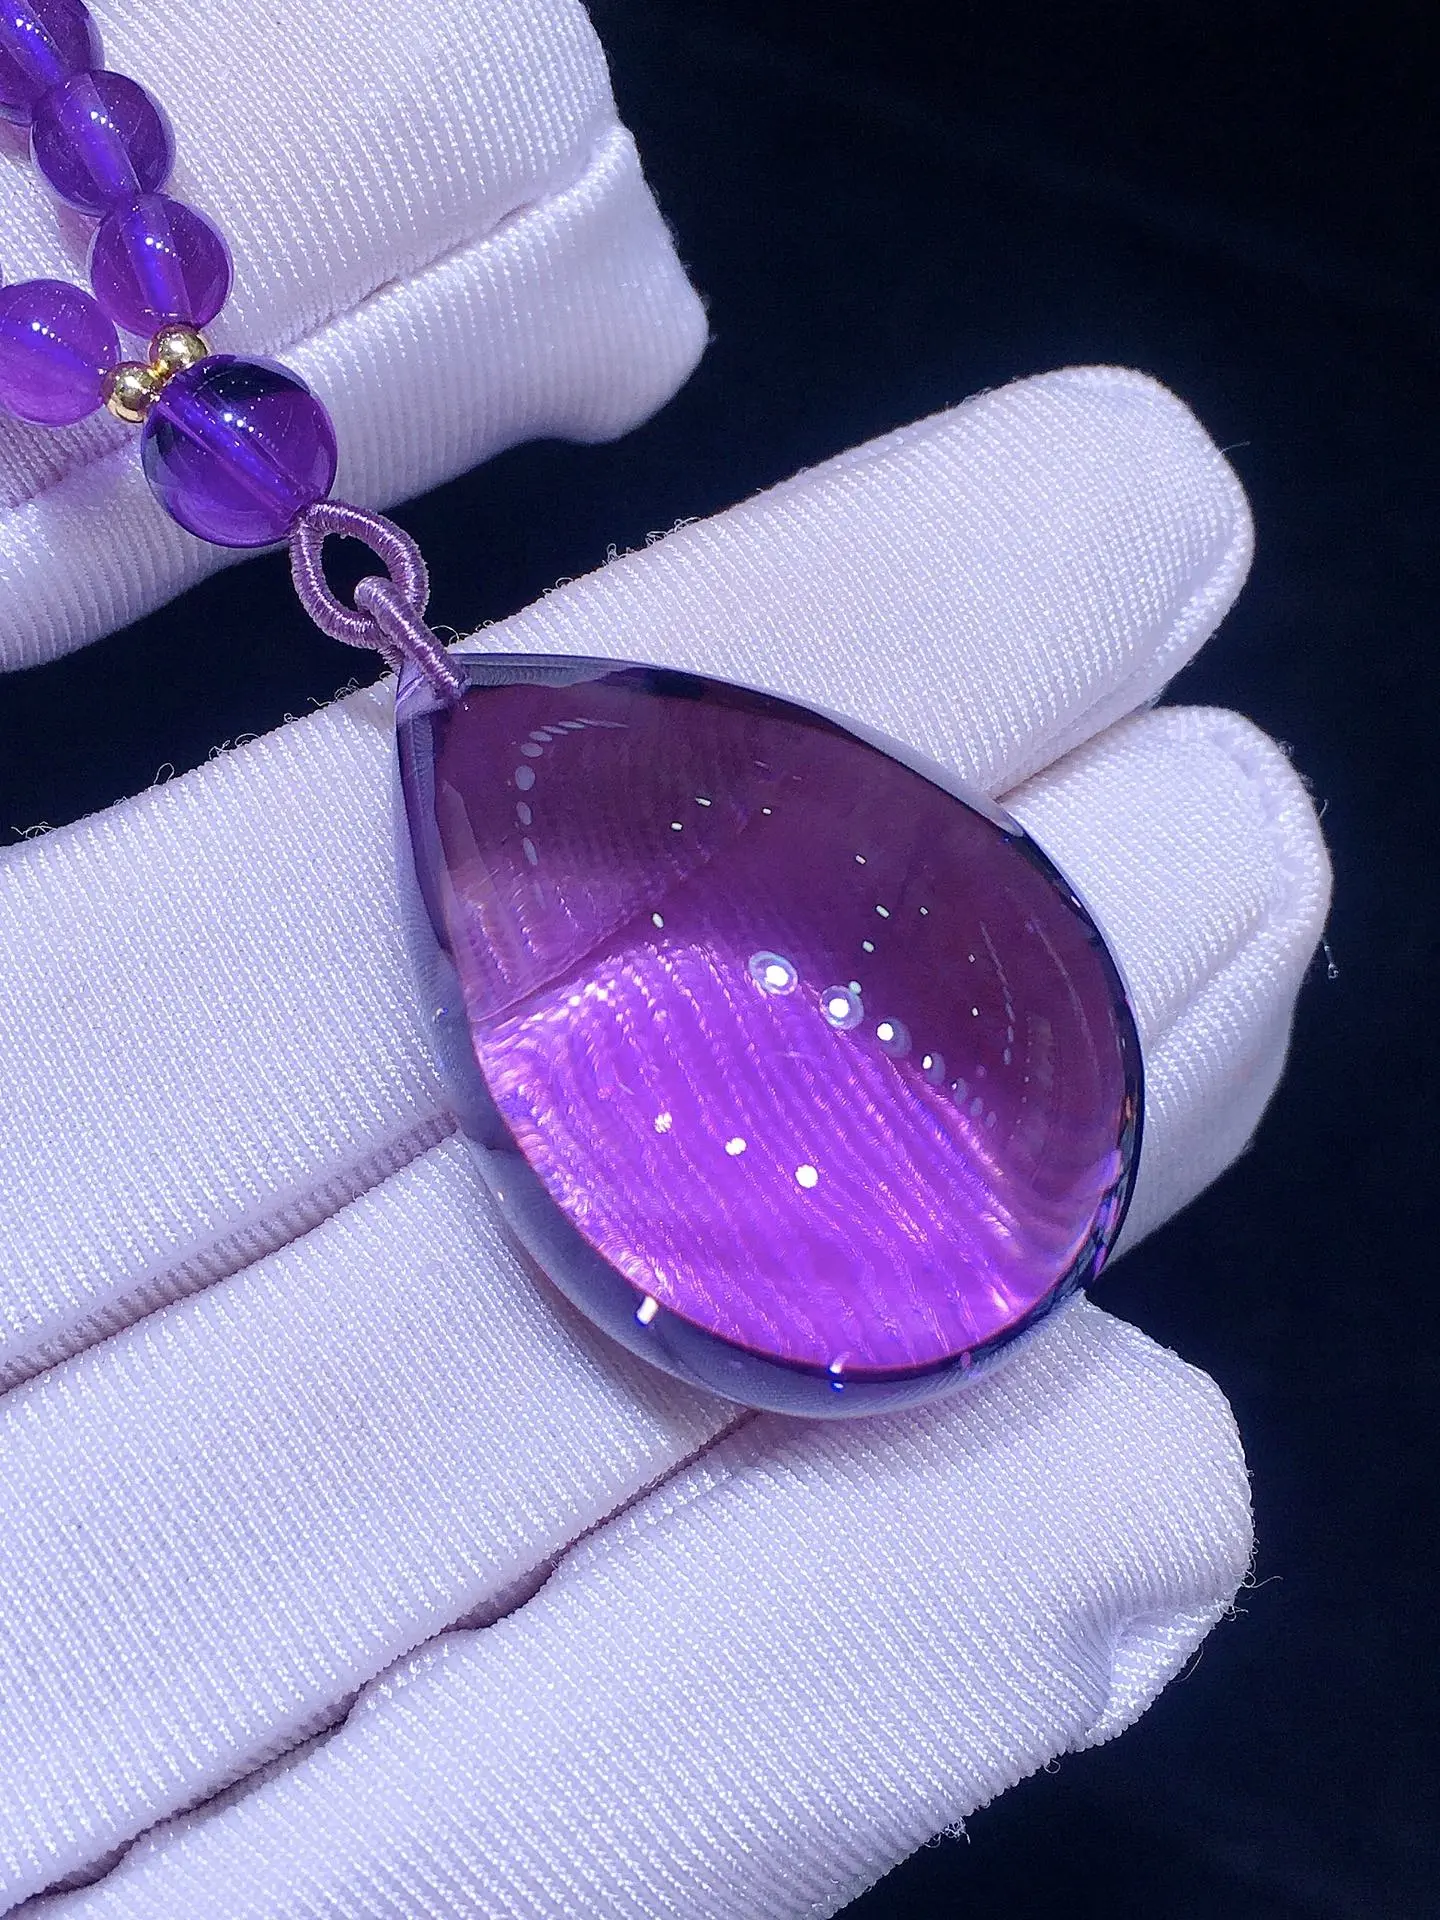 天然乌圭拉紫水晶水滴大吊坠  紫罗兰色，高优贵雅晶体水透紫水晶发散着高贵的紫色光芒[嘿哈]所